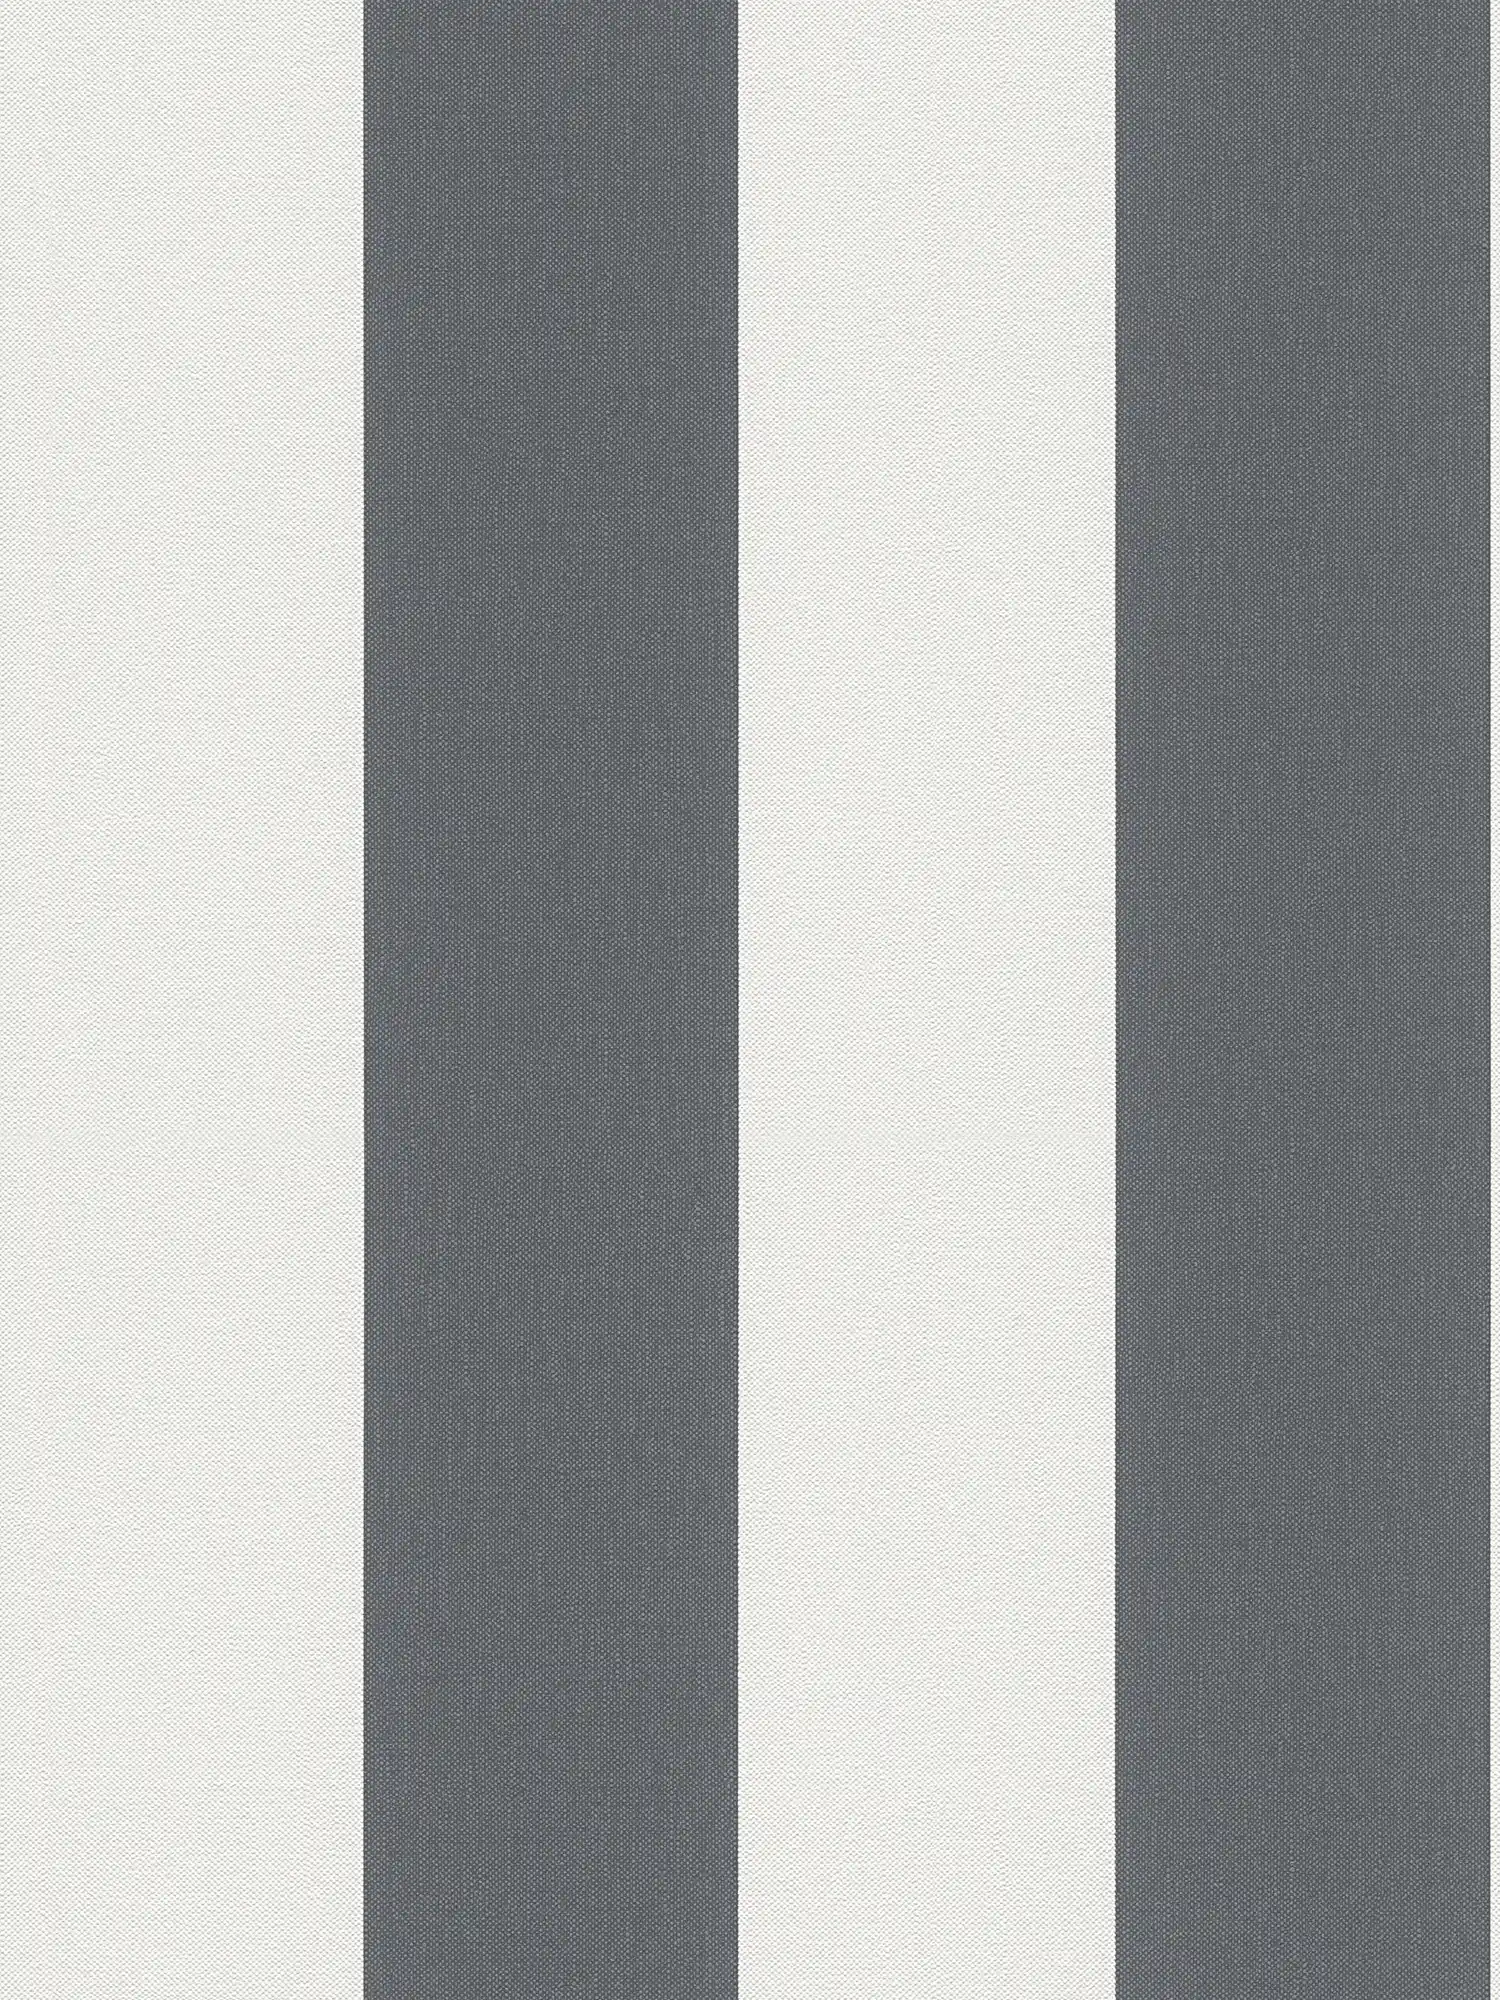 Blokstreepbehang met linnenstructuur - grijs, wit
